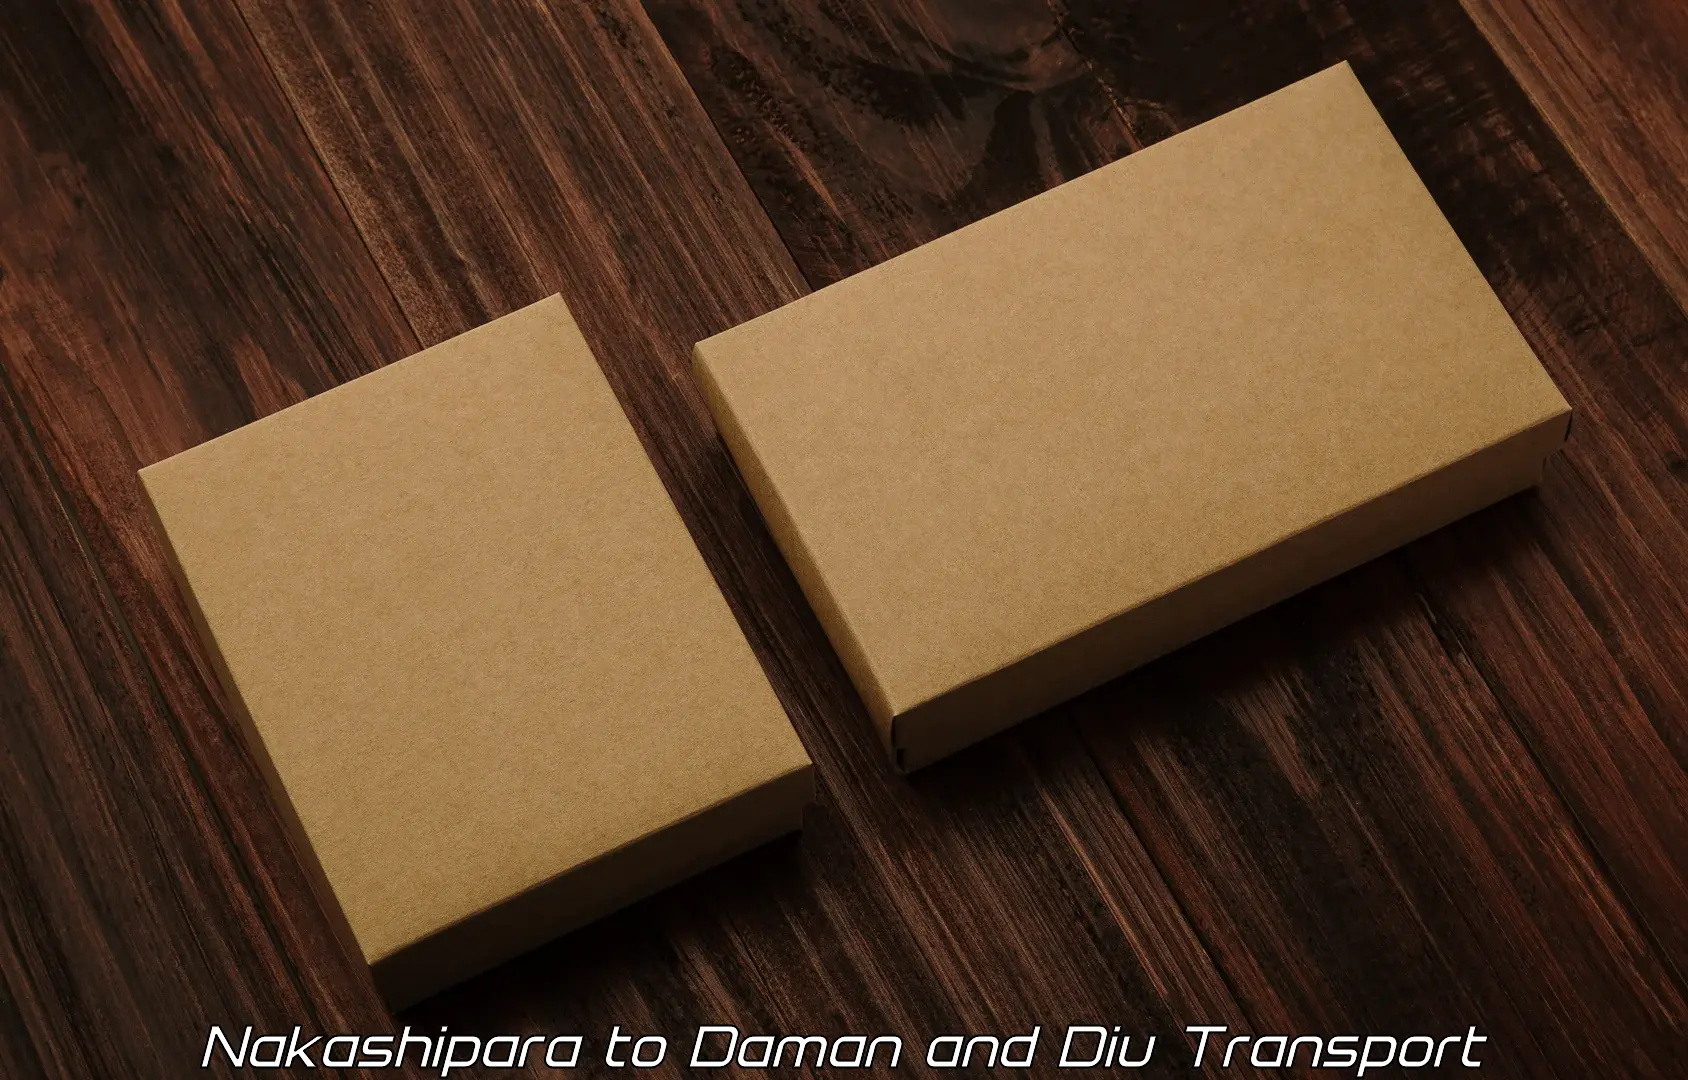 Vehicle parcel service Nakashipara to Daman and Diu